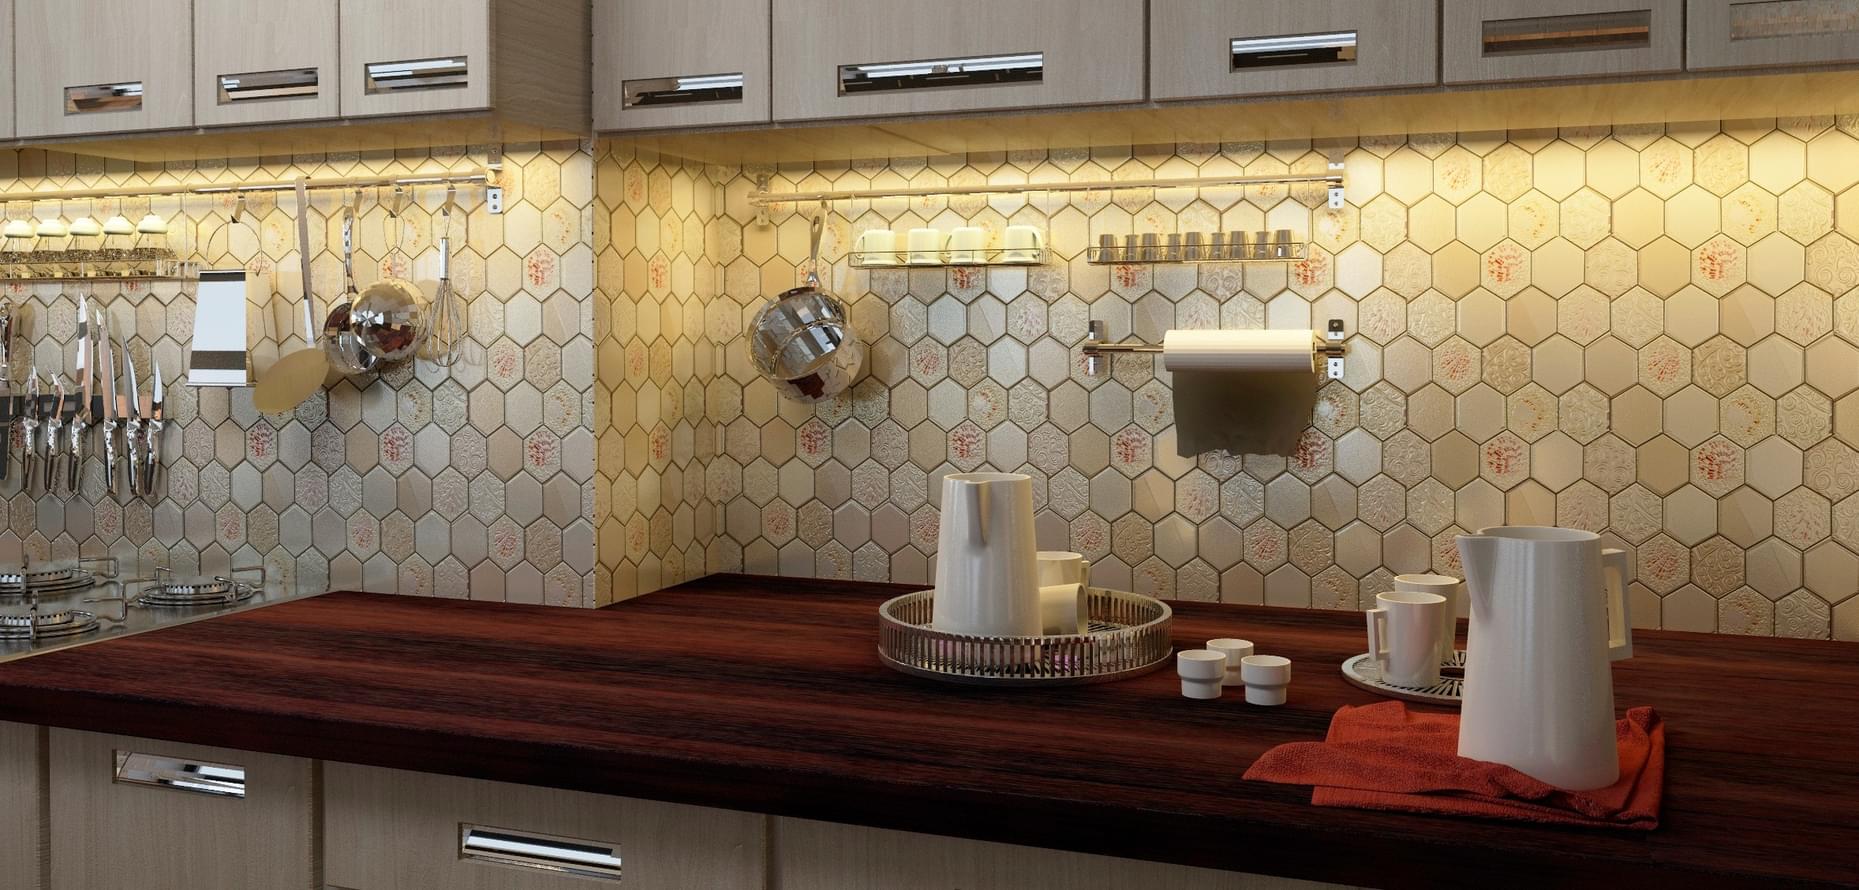 мозаика плитка для кухни на фартук фото